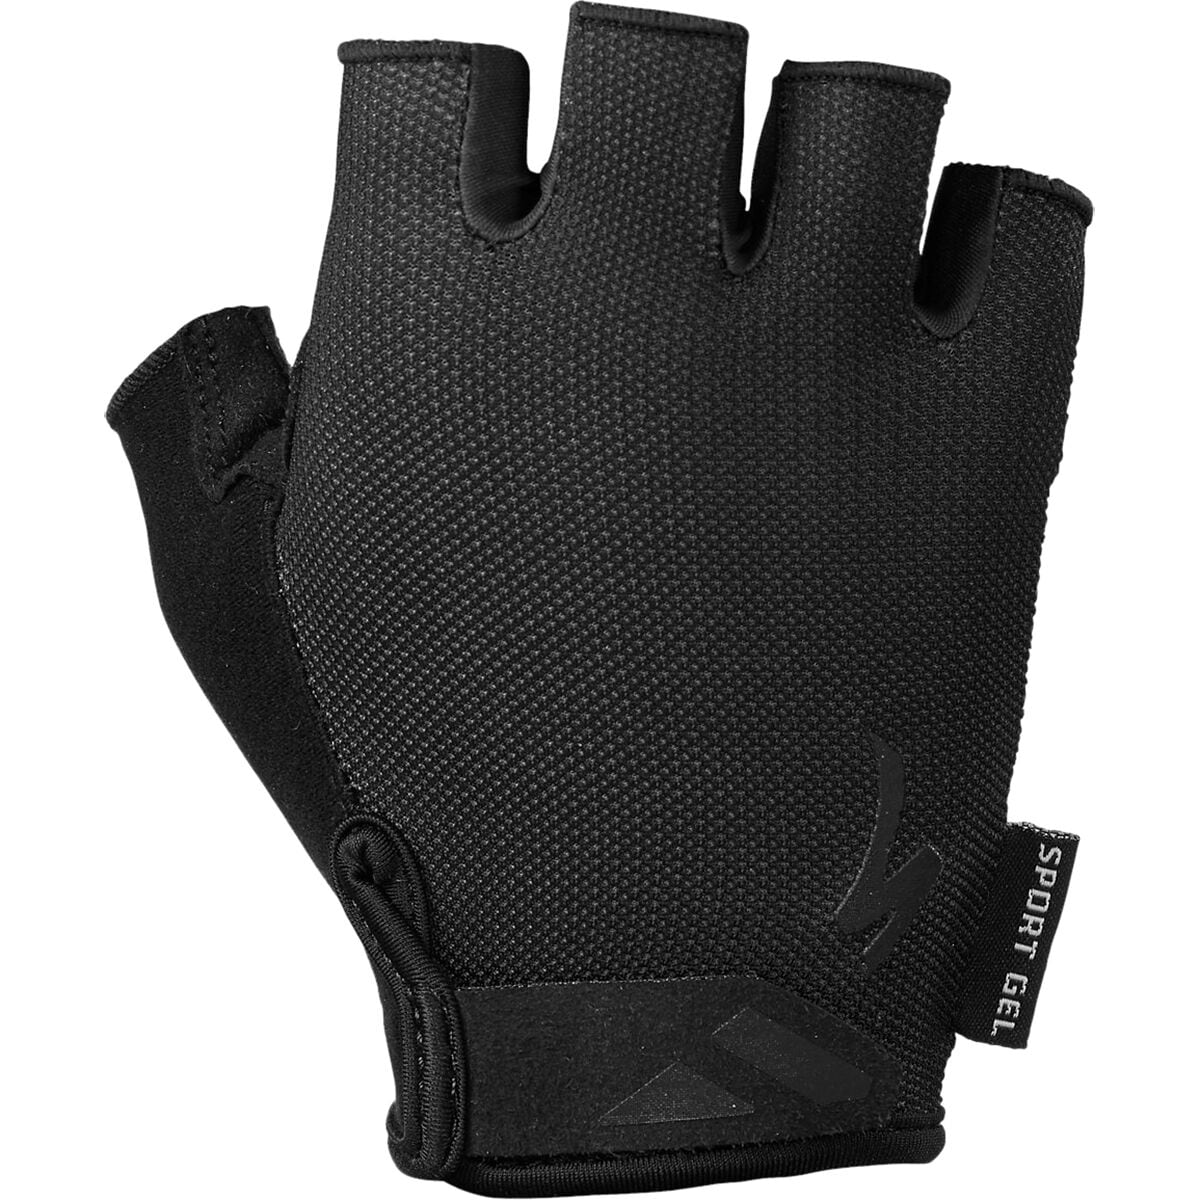 Specialized Body Geometry Sport Gel Short Finger Glove - Women's Black, M